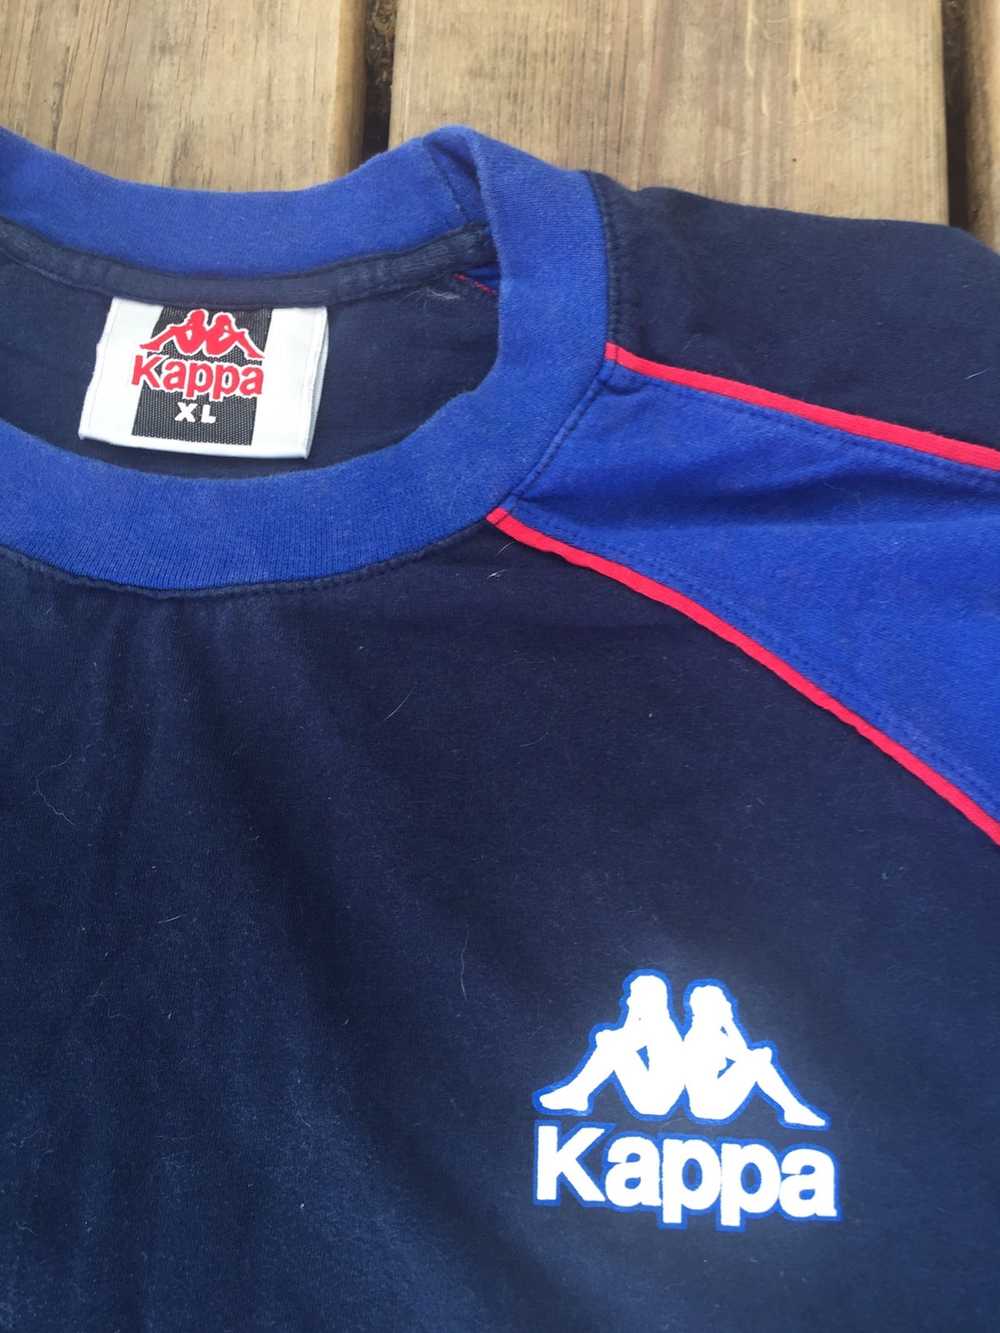 Kappa Vintage Kappa Sports Jersey Shirt XL - image 2